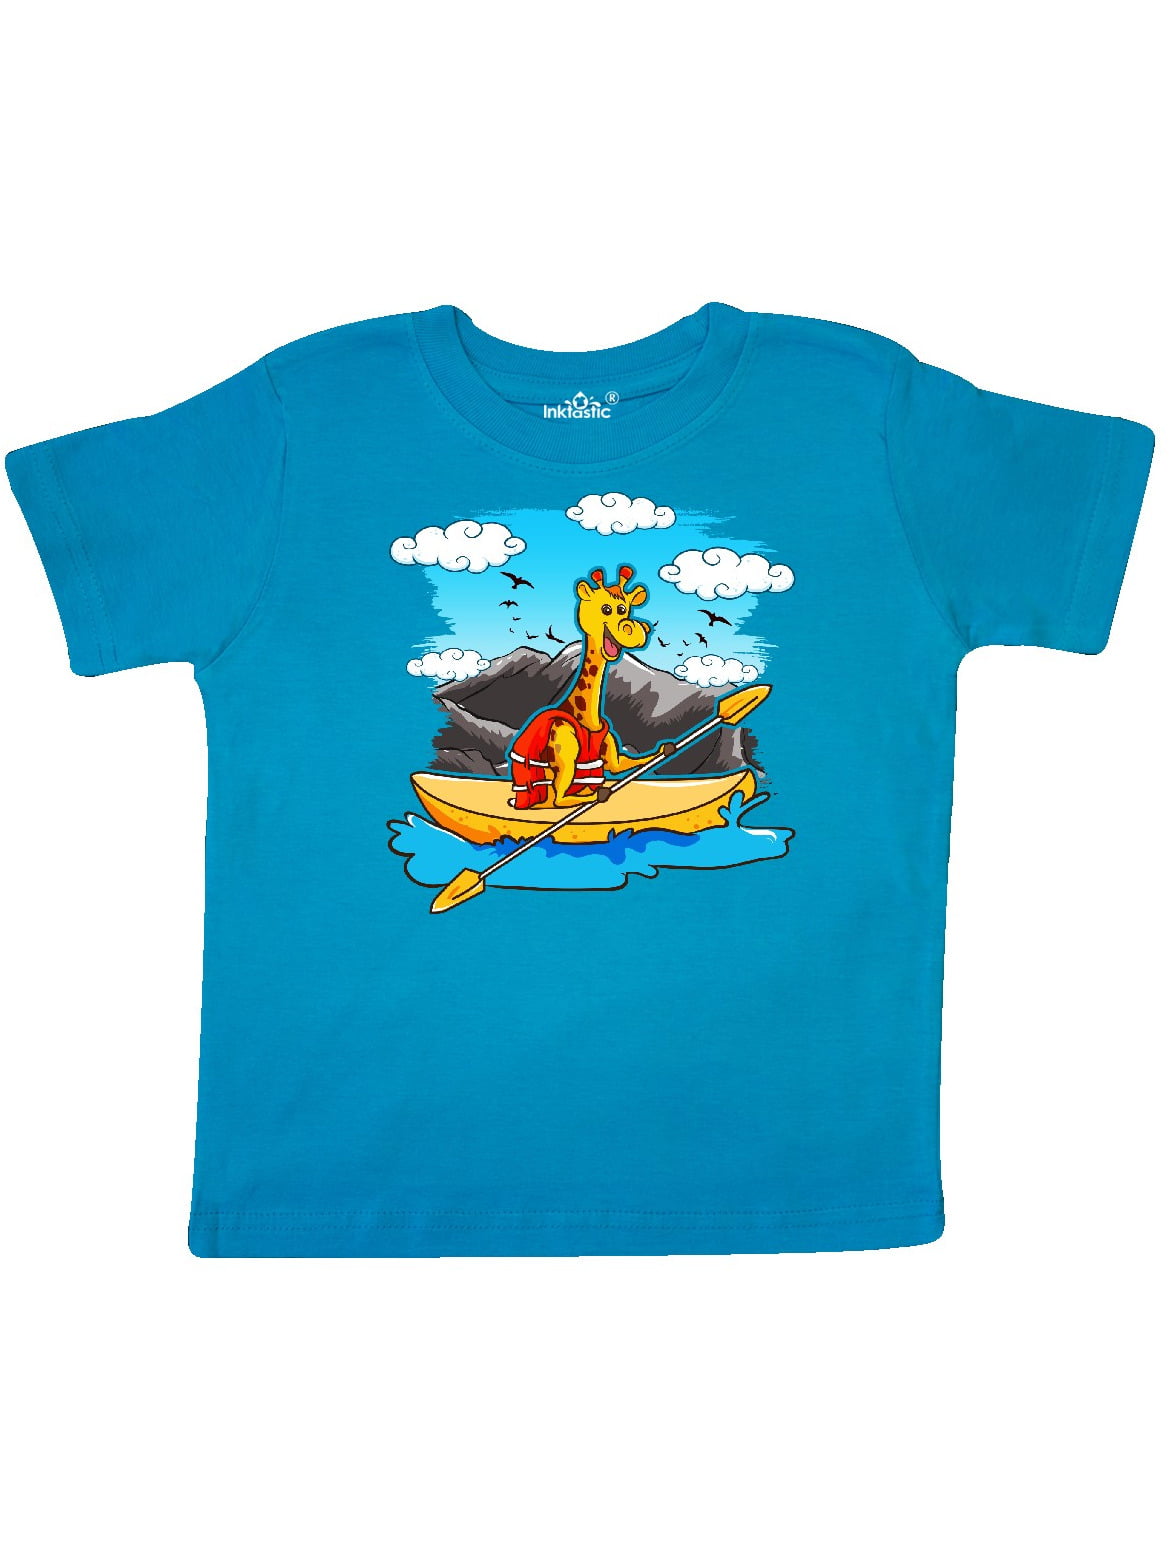 inktastic Kayak Gifts I Love Kayaking Toddler T-Shirt 